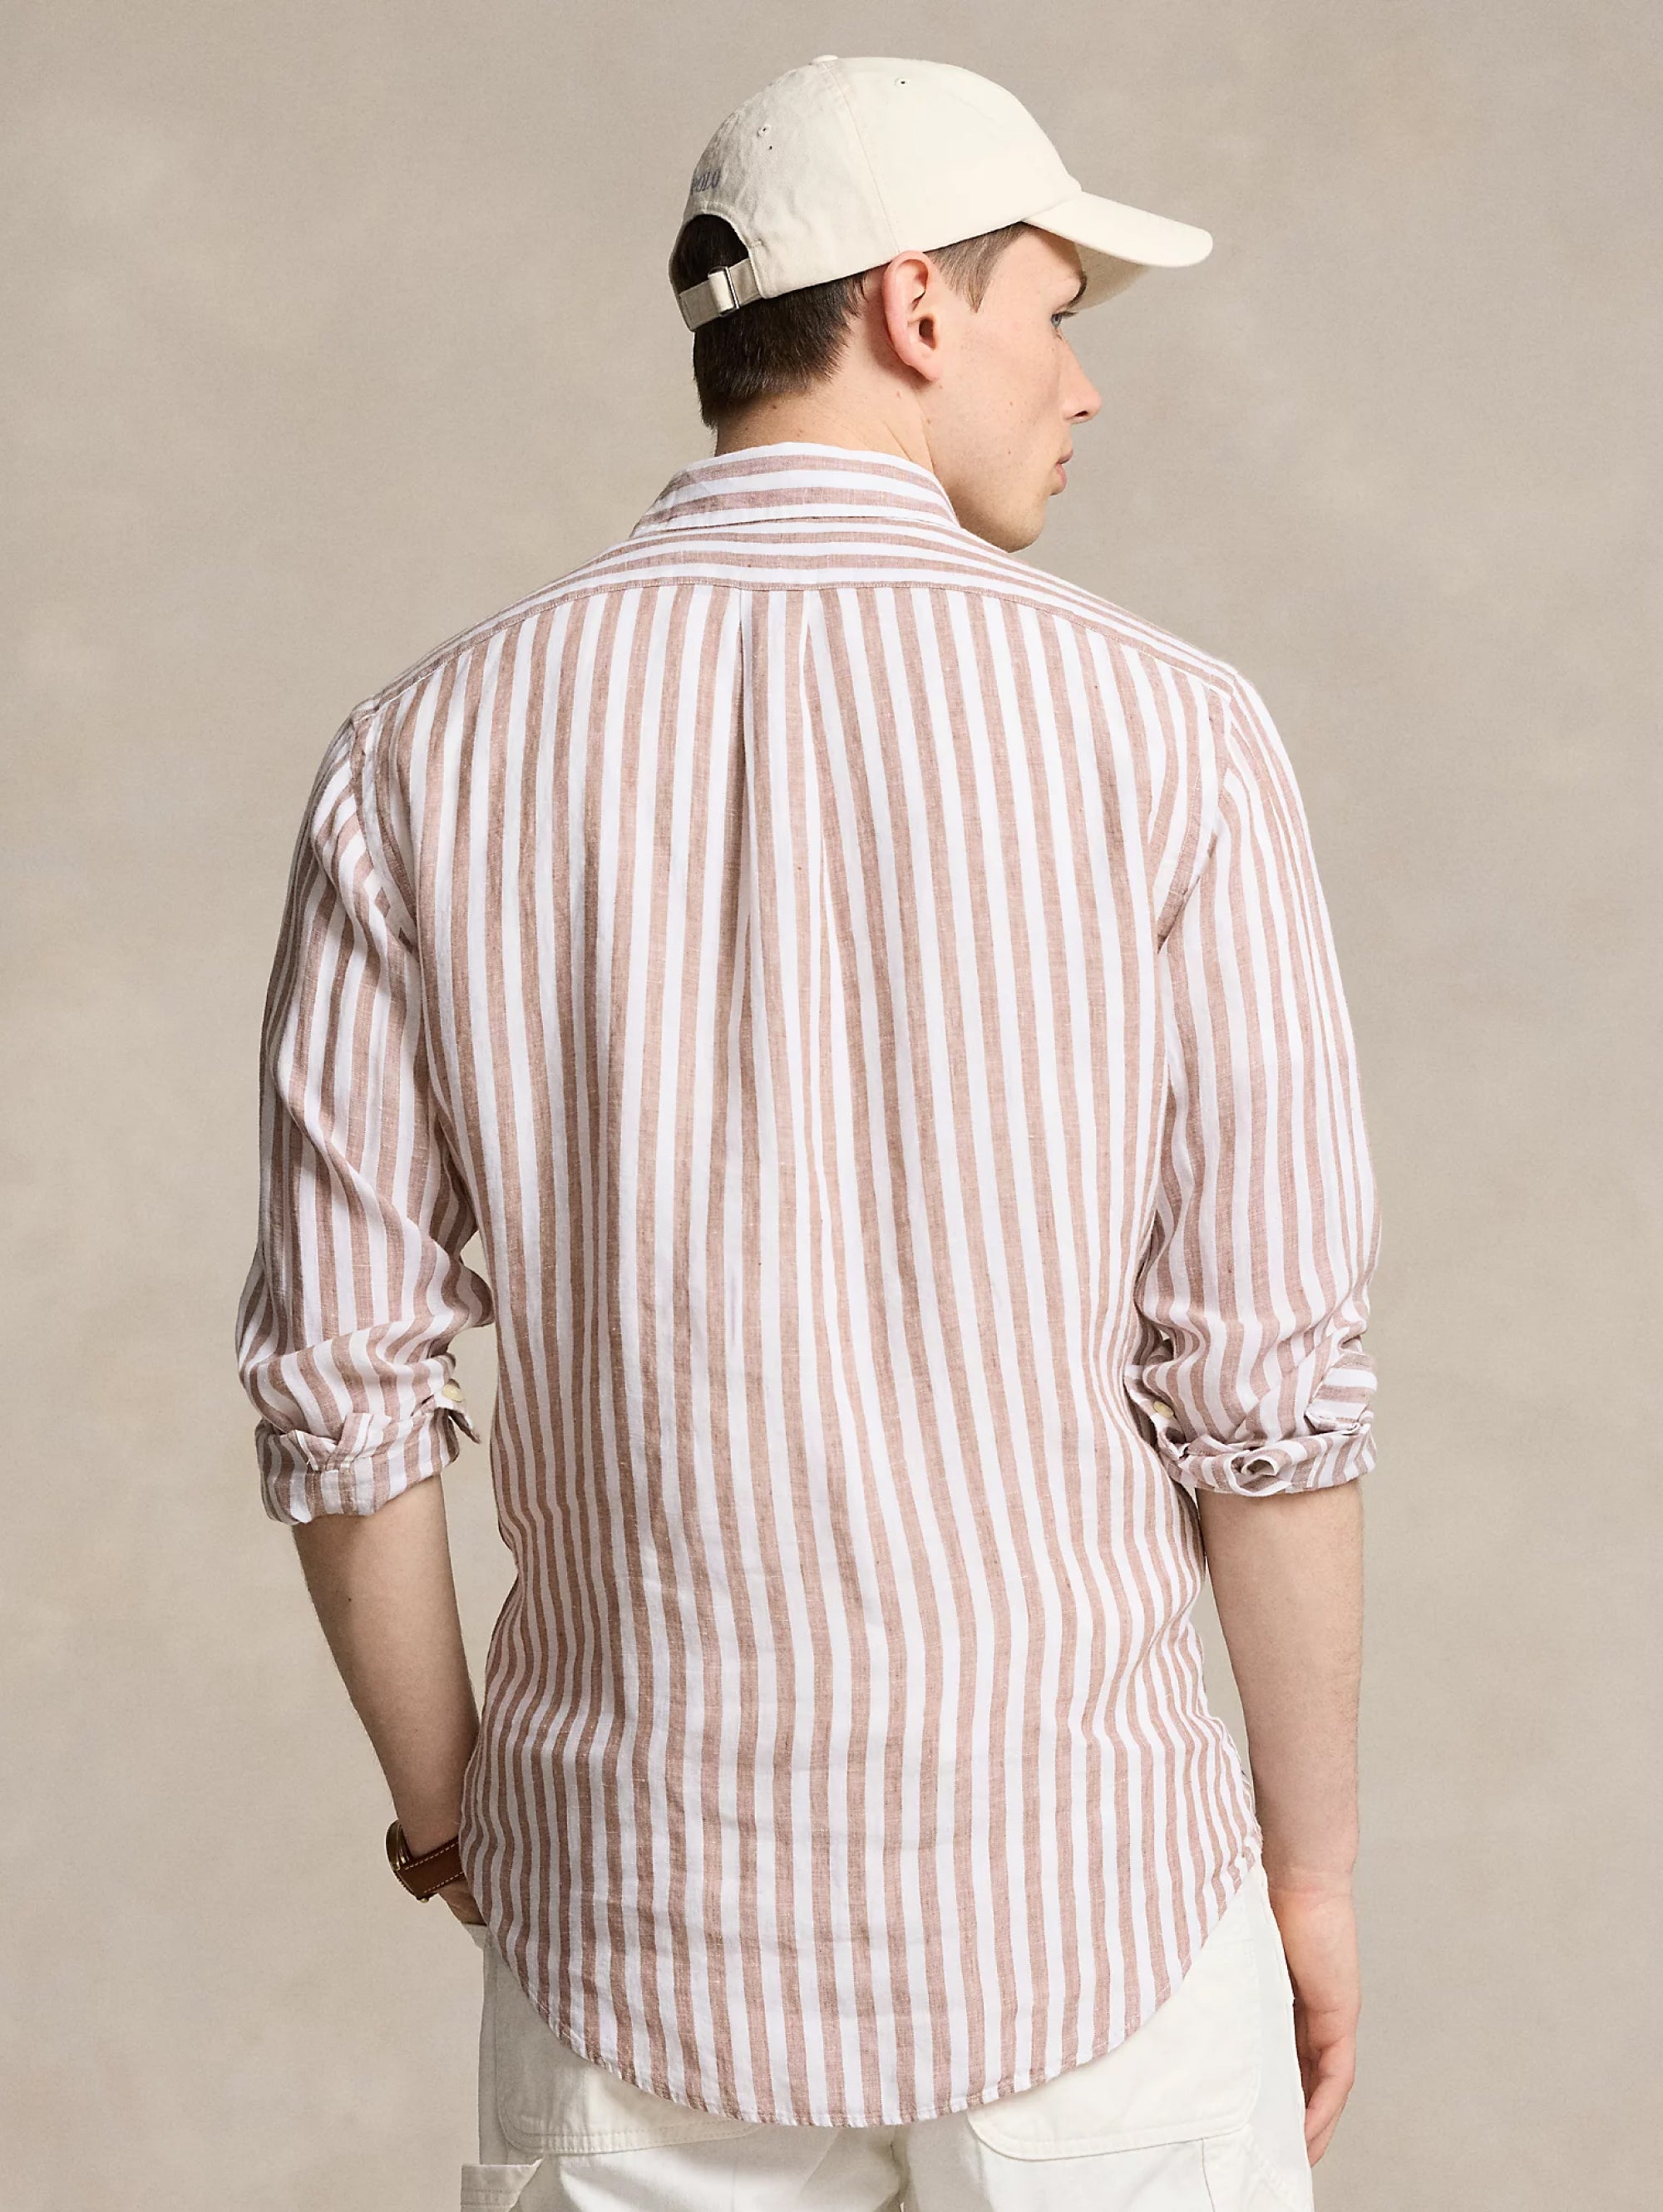 Custom Fit Striped Shirt in Khaki/White Linen